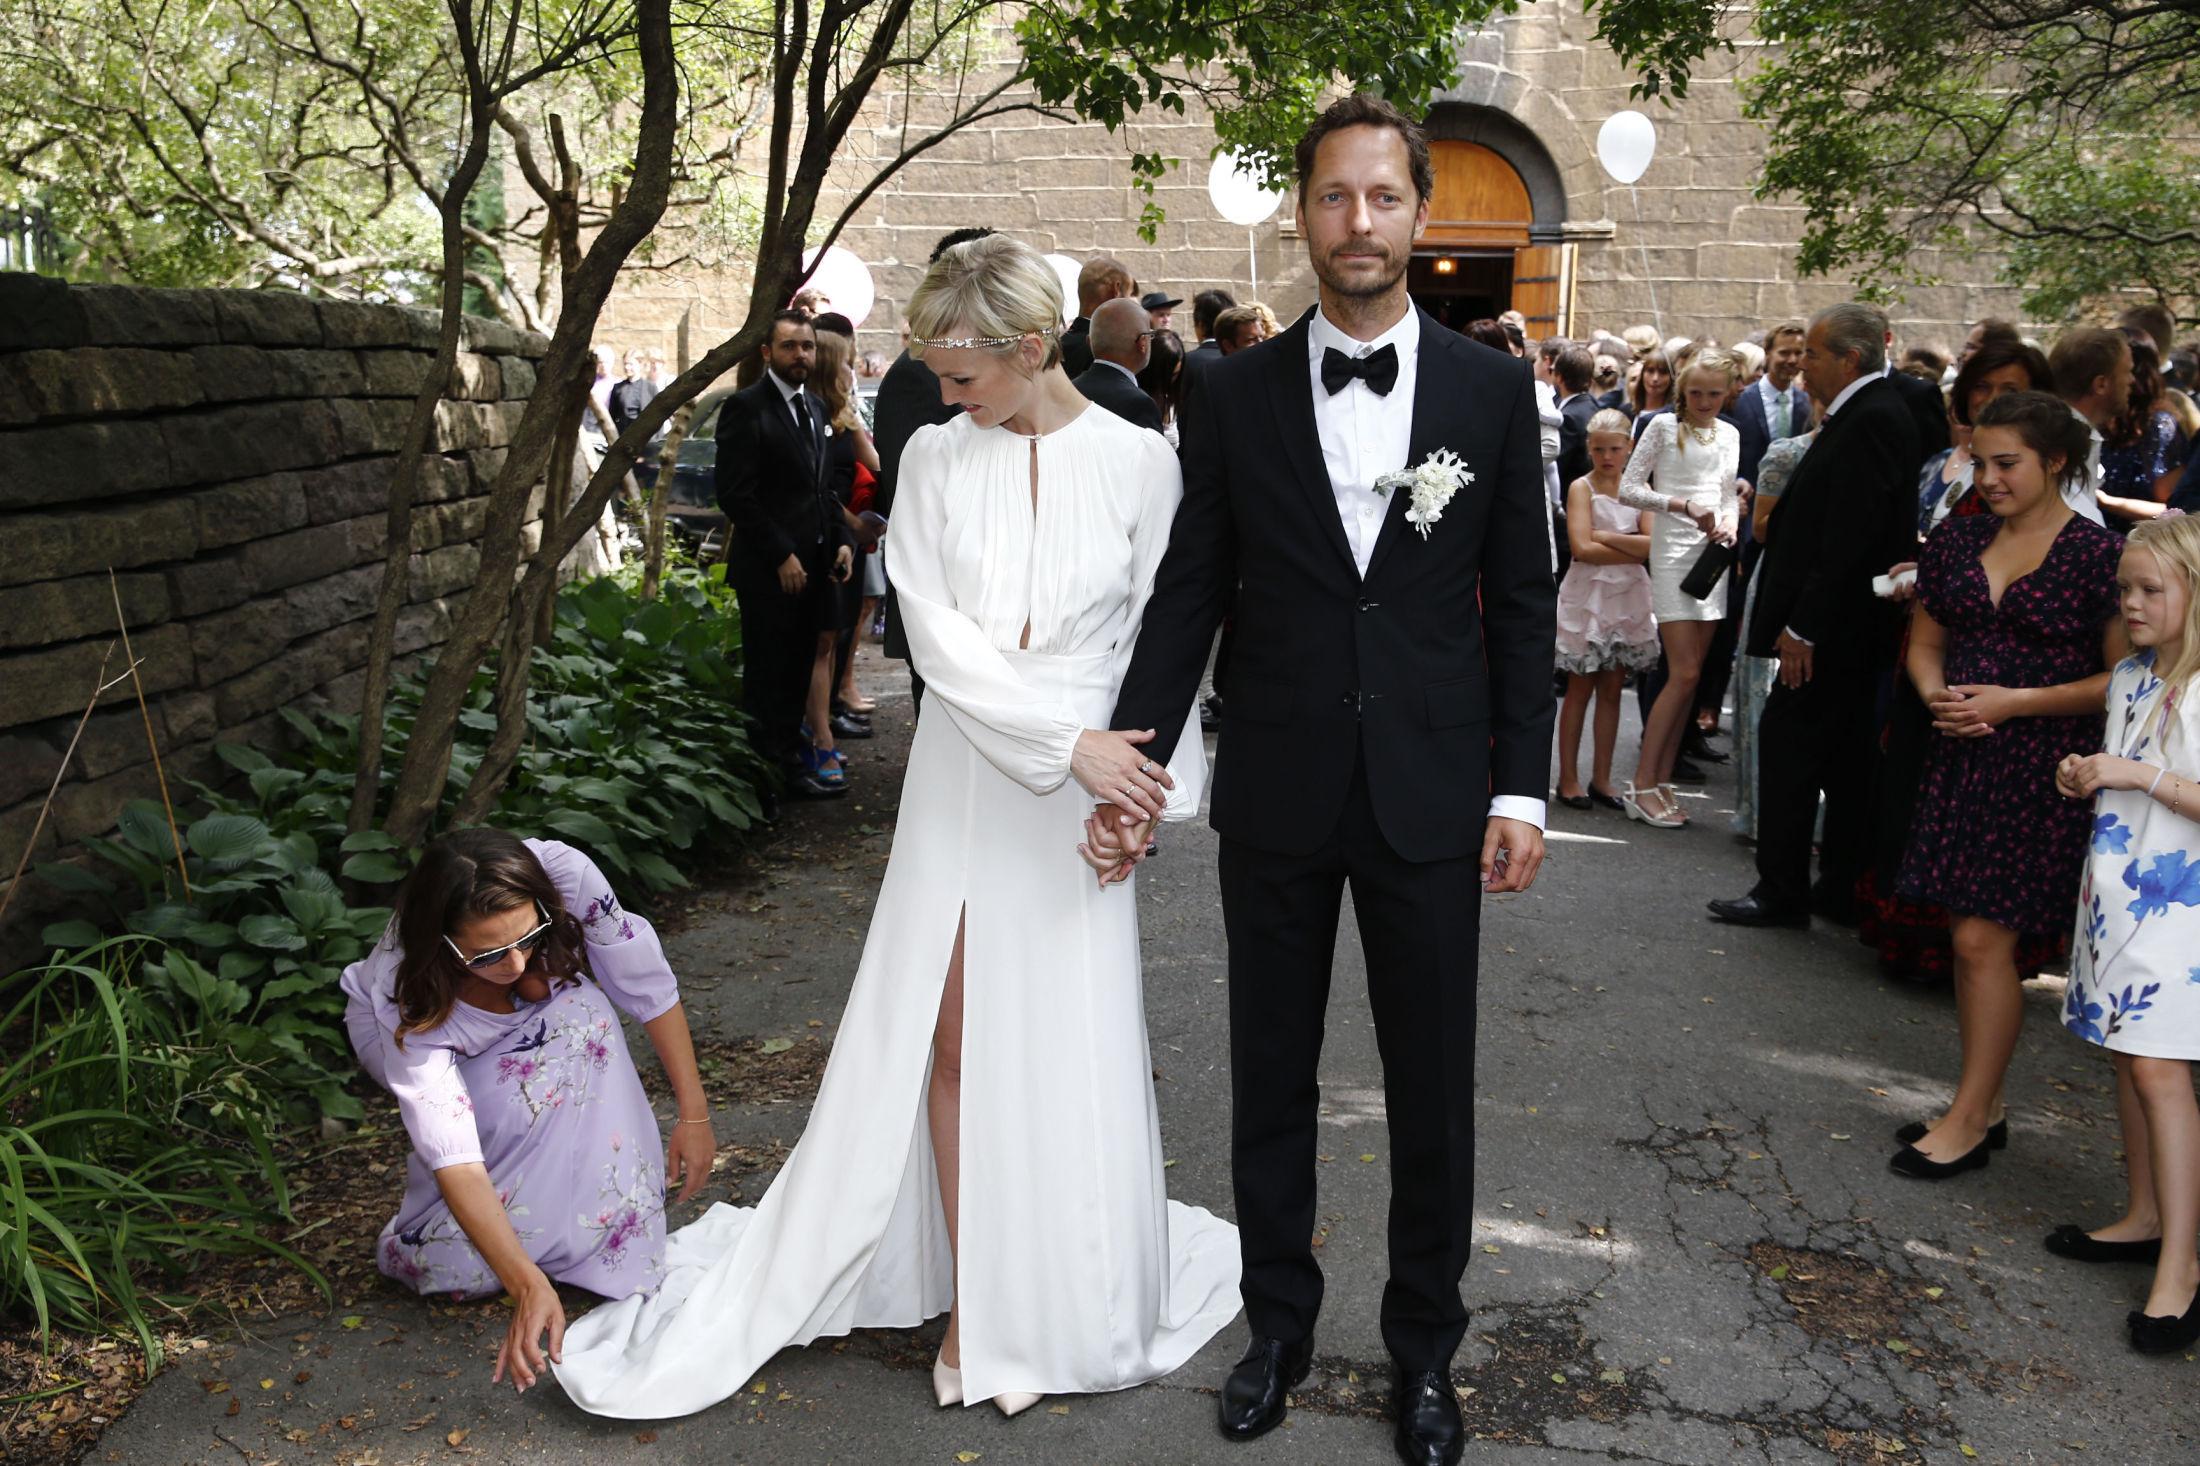 PERFEKSJON: Designer bak brudekjolen, Pia Tjelta passet på at alt var perfekt før bildene skulle tas. Legg merke til den høye splitten. Foto: Mattis Sandblad/VG